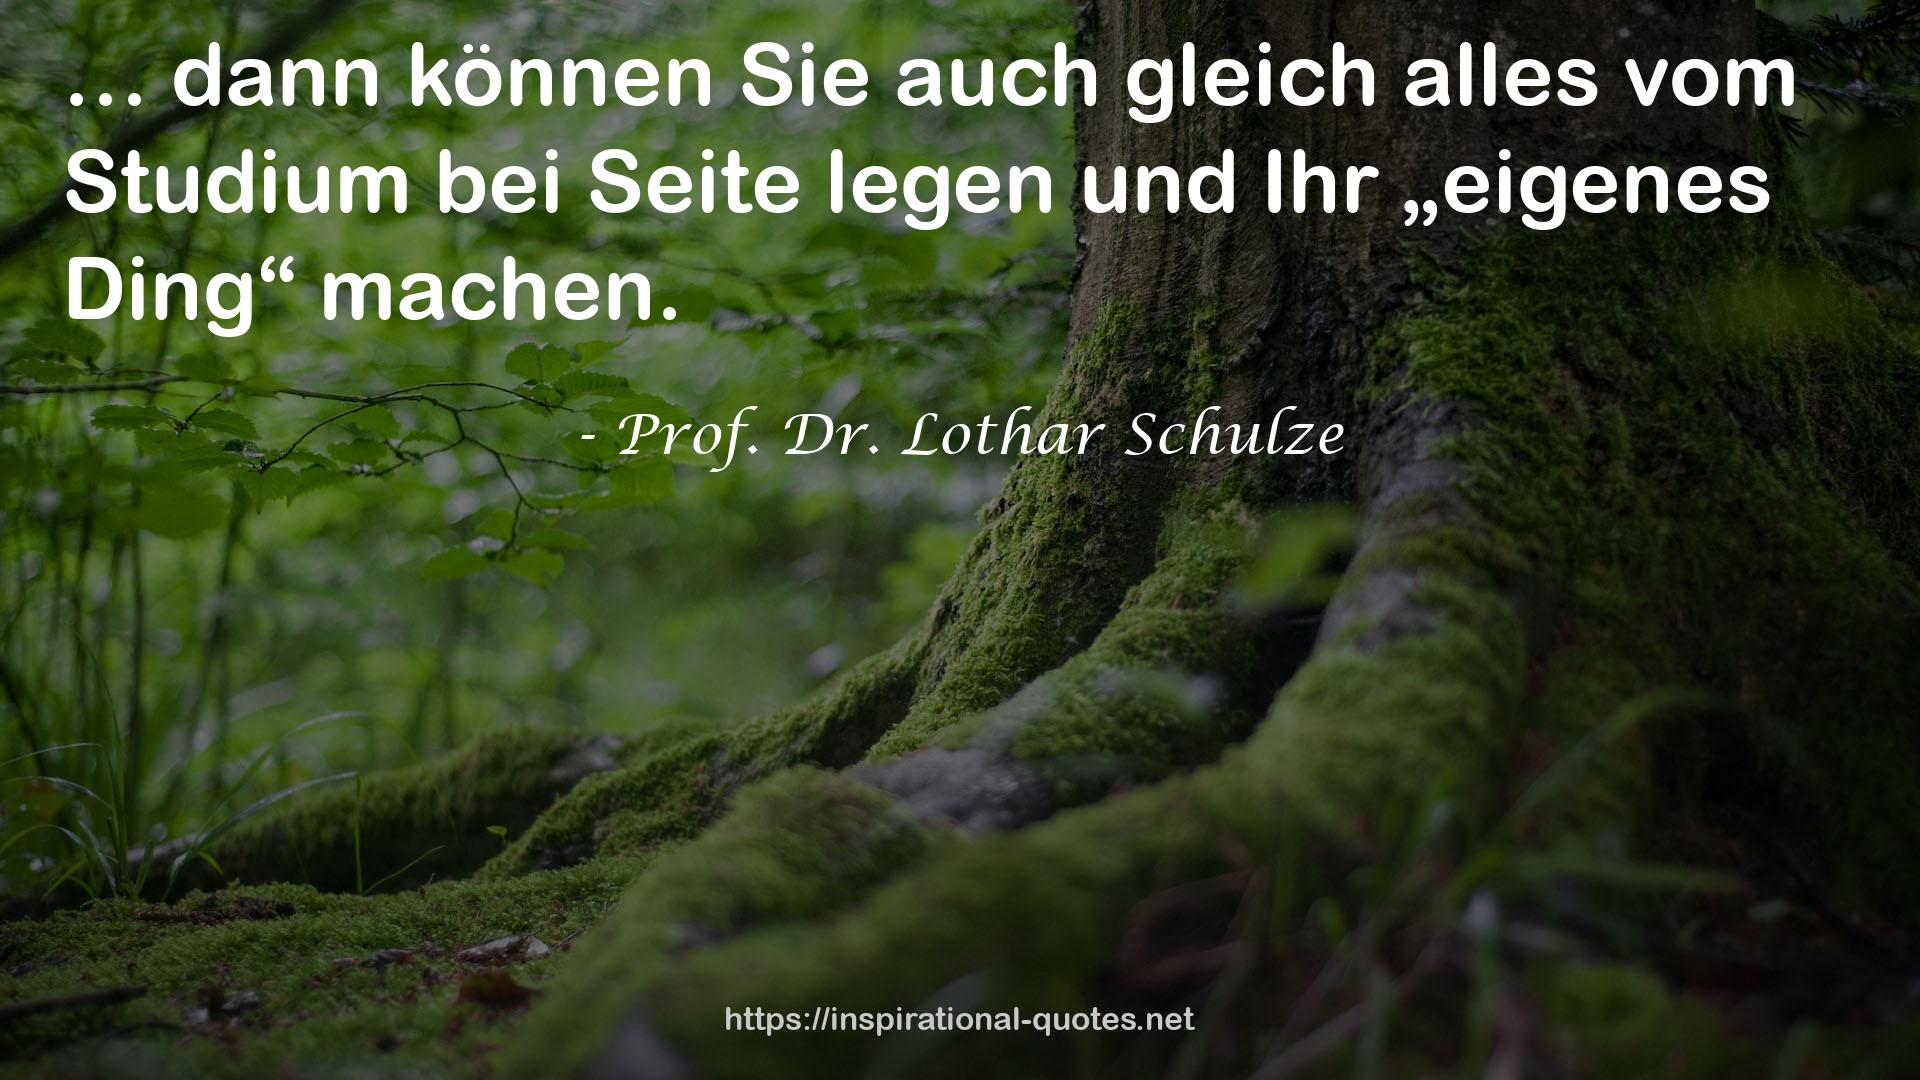 Prof. Dr. Lothar Schulze QUOTES